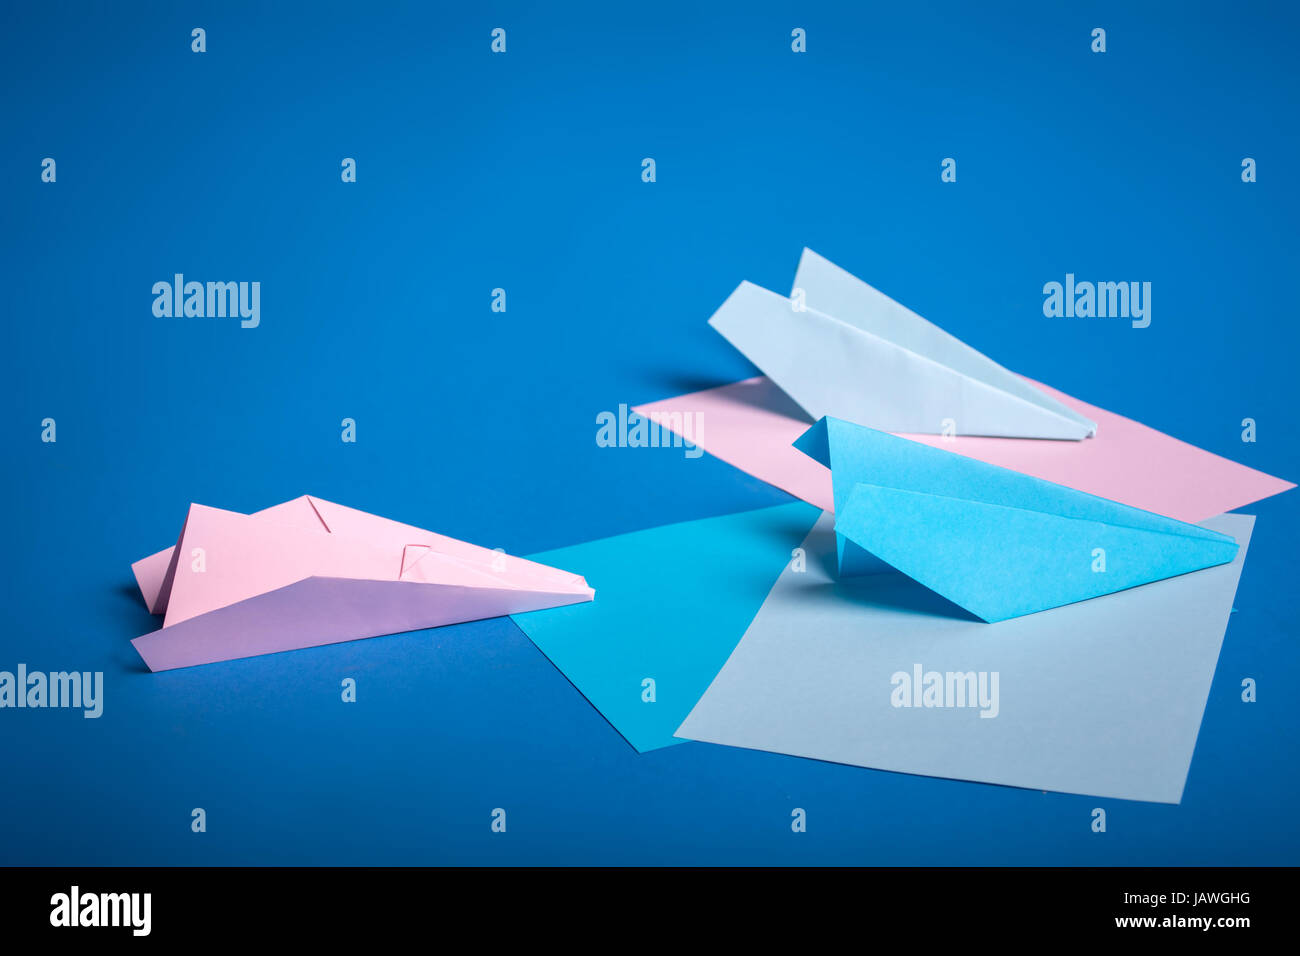 Ort für die Herstellung von Origami Papierflieger. Blau, blau, rosa Origami Flugzeuge basteln Stockfoto